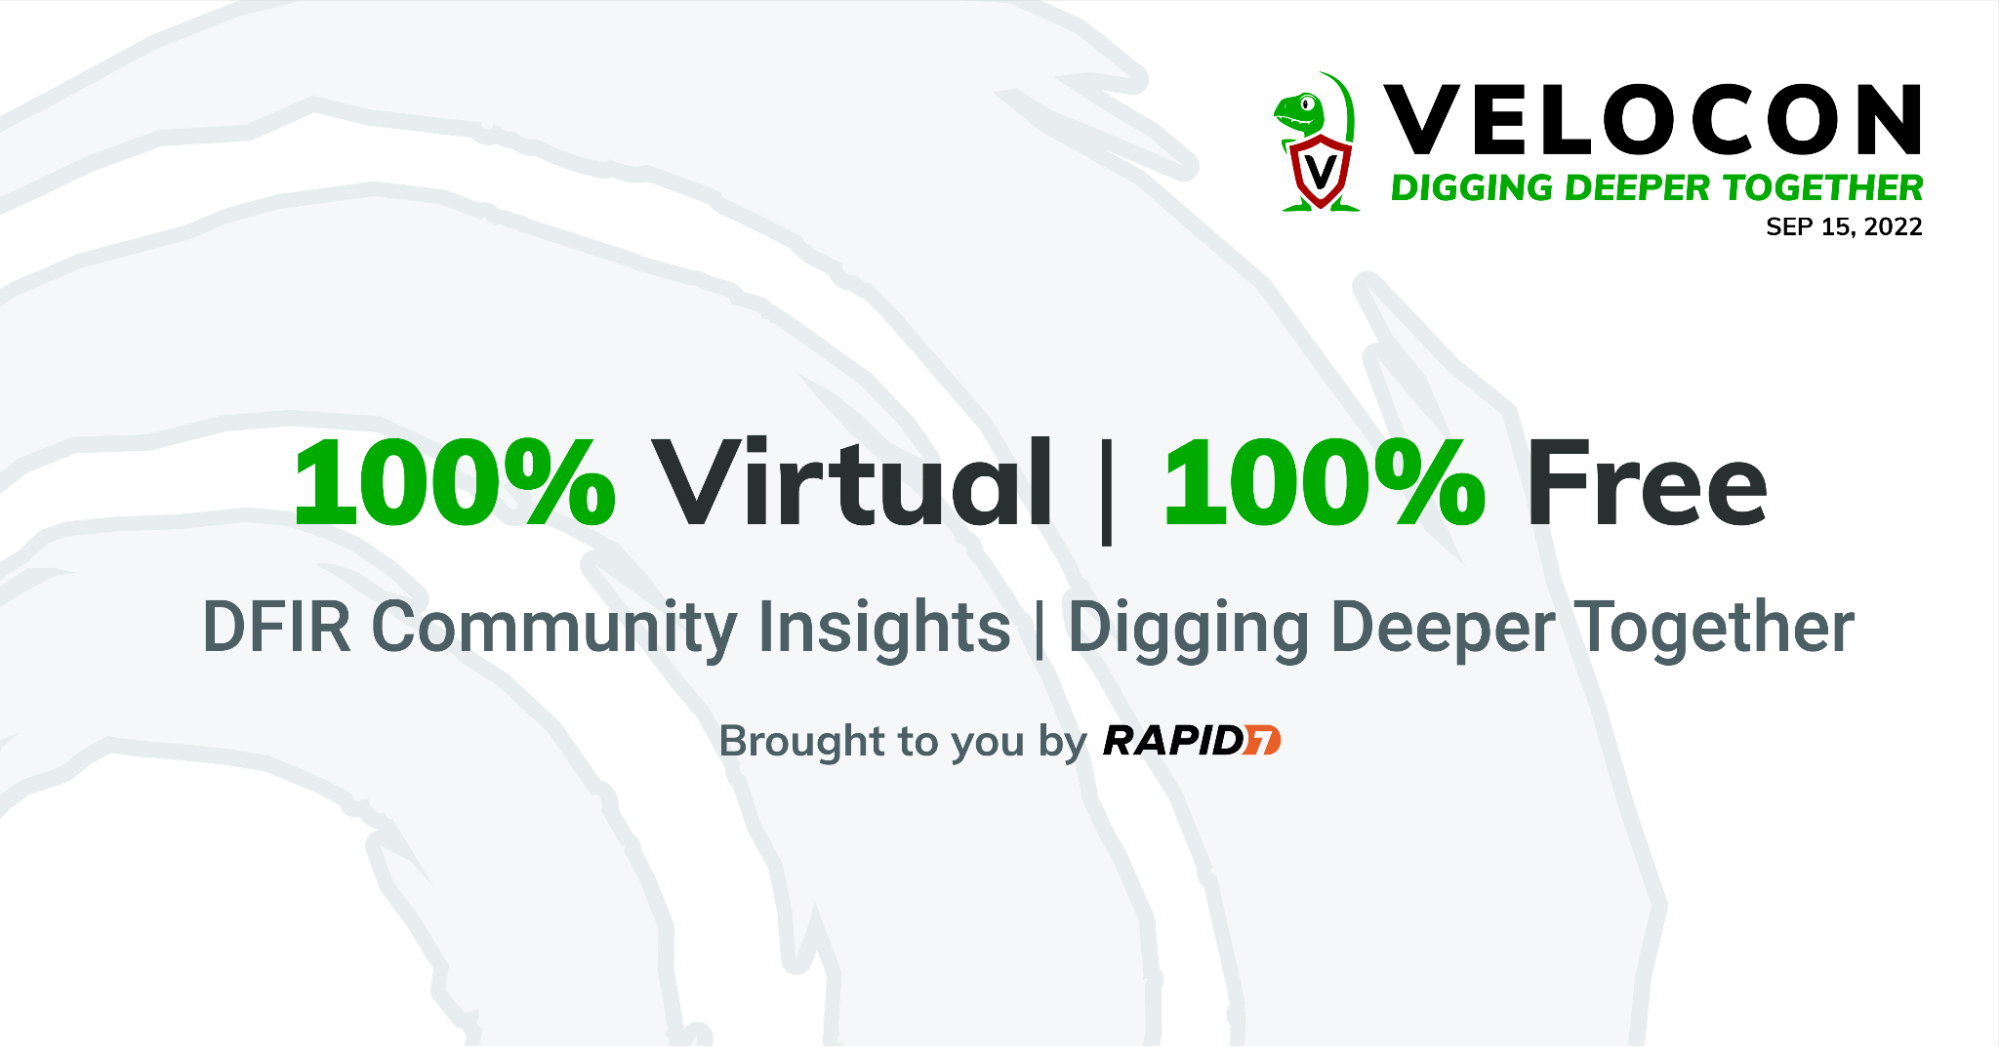 VeloCON 2022: Digging Deeper Together!